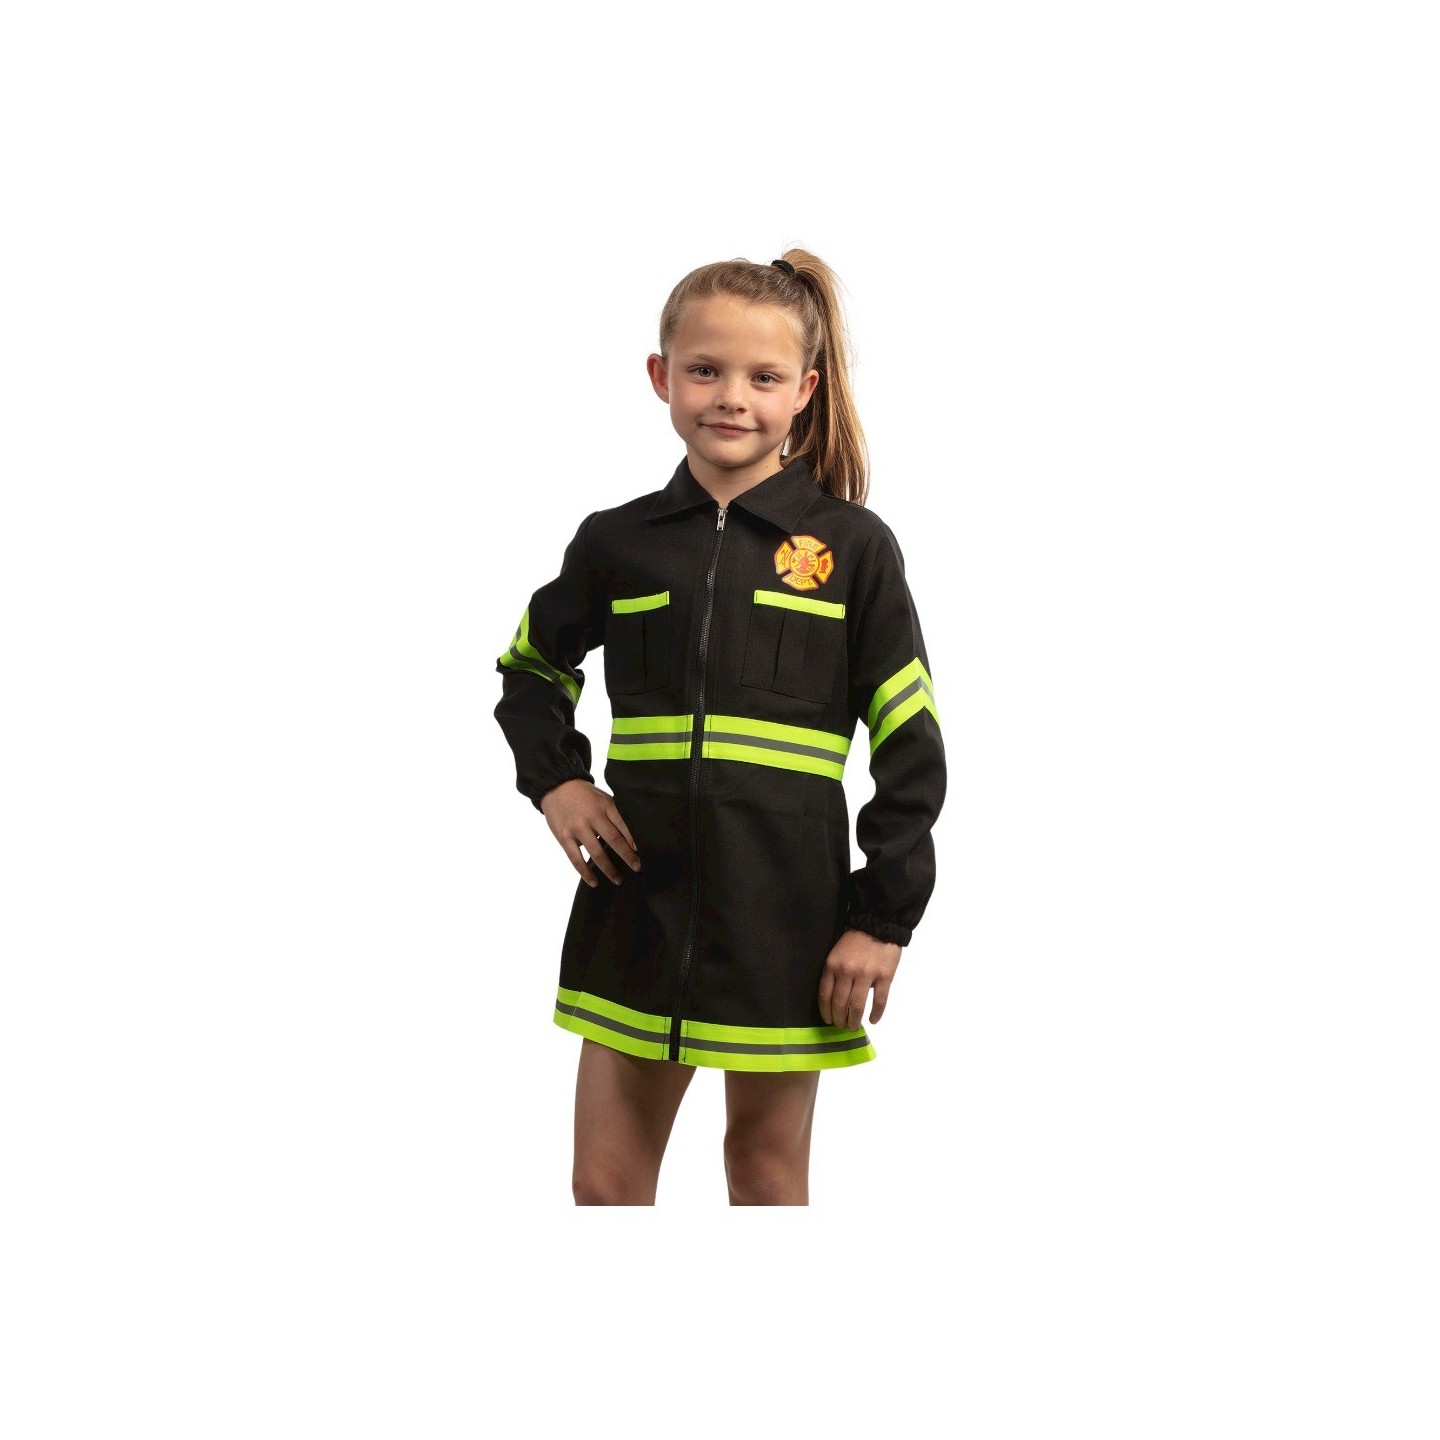 goud Onderwijs Tragisch Brandweer jurkje kind | Jokershop.be - Carnaval kleding